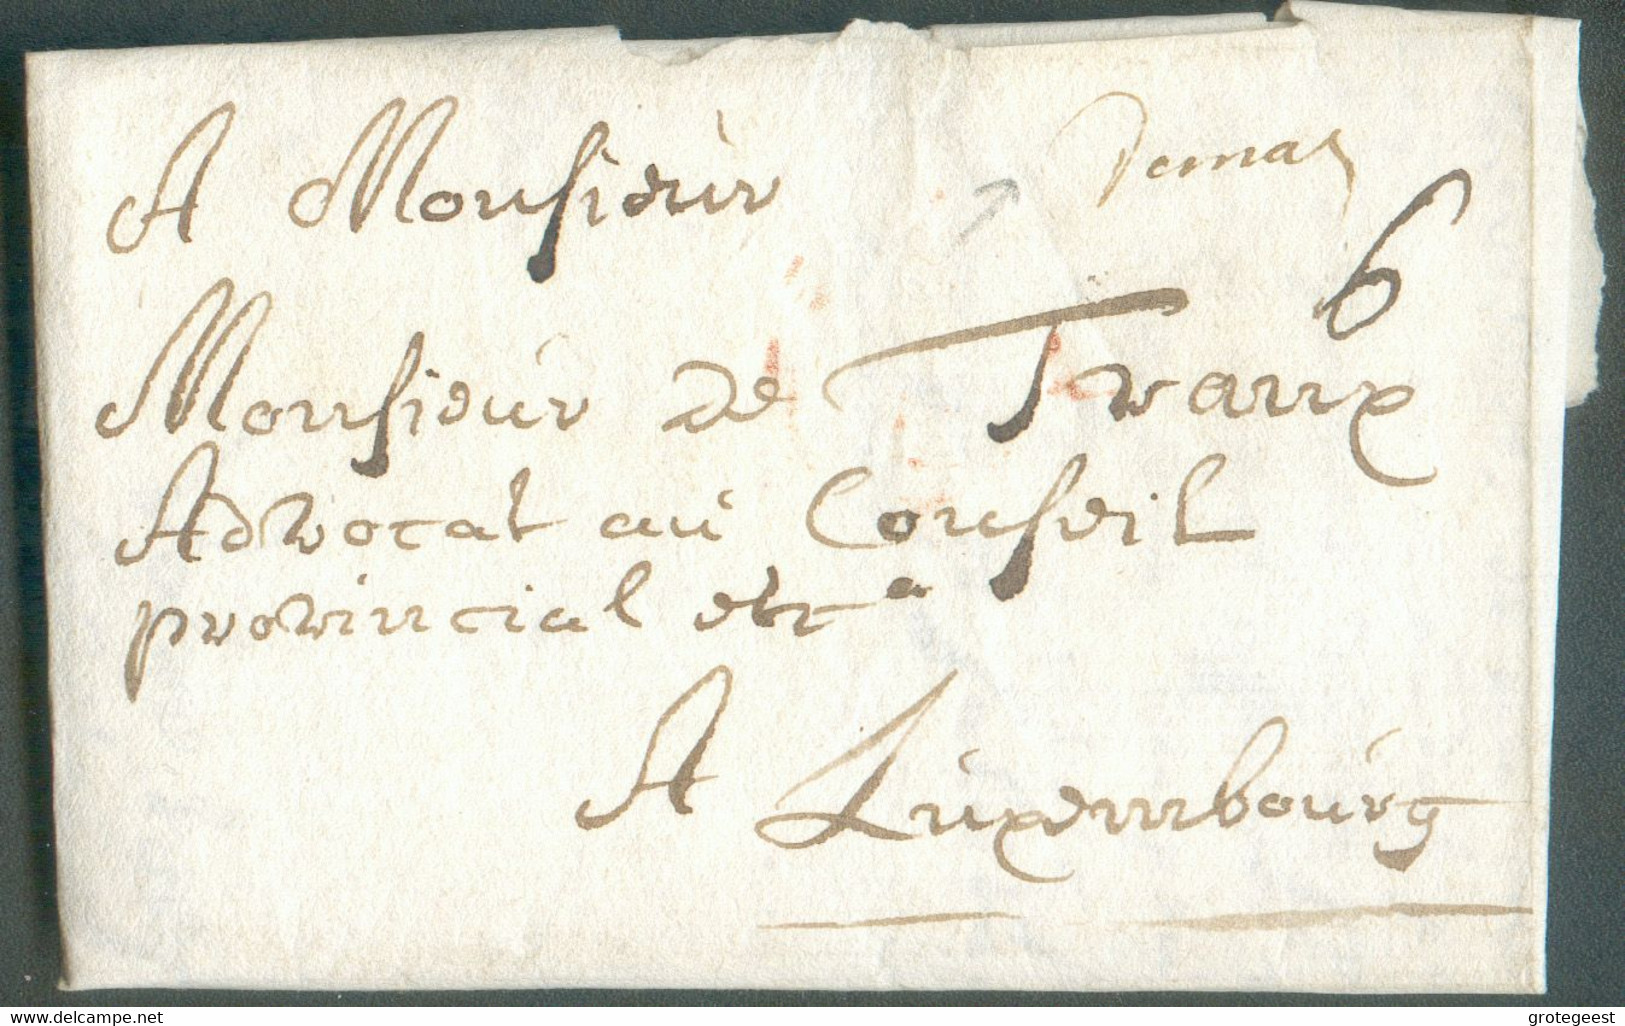 LAC De MALINES (griffe Manuscrite DeMal) Du 9 Janvier 1734 Vers L'avocat Du Conseil Provincial De Luxembourg), Port '6' - 1714-1794 (Pays-Bas Autrichiens)